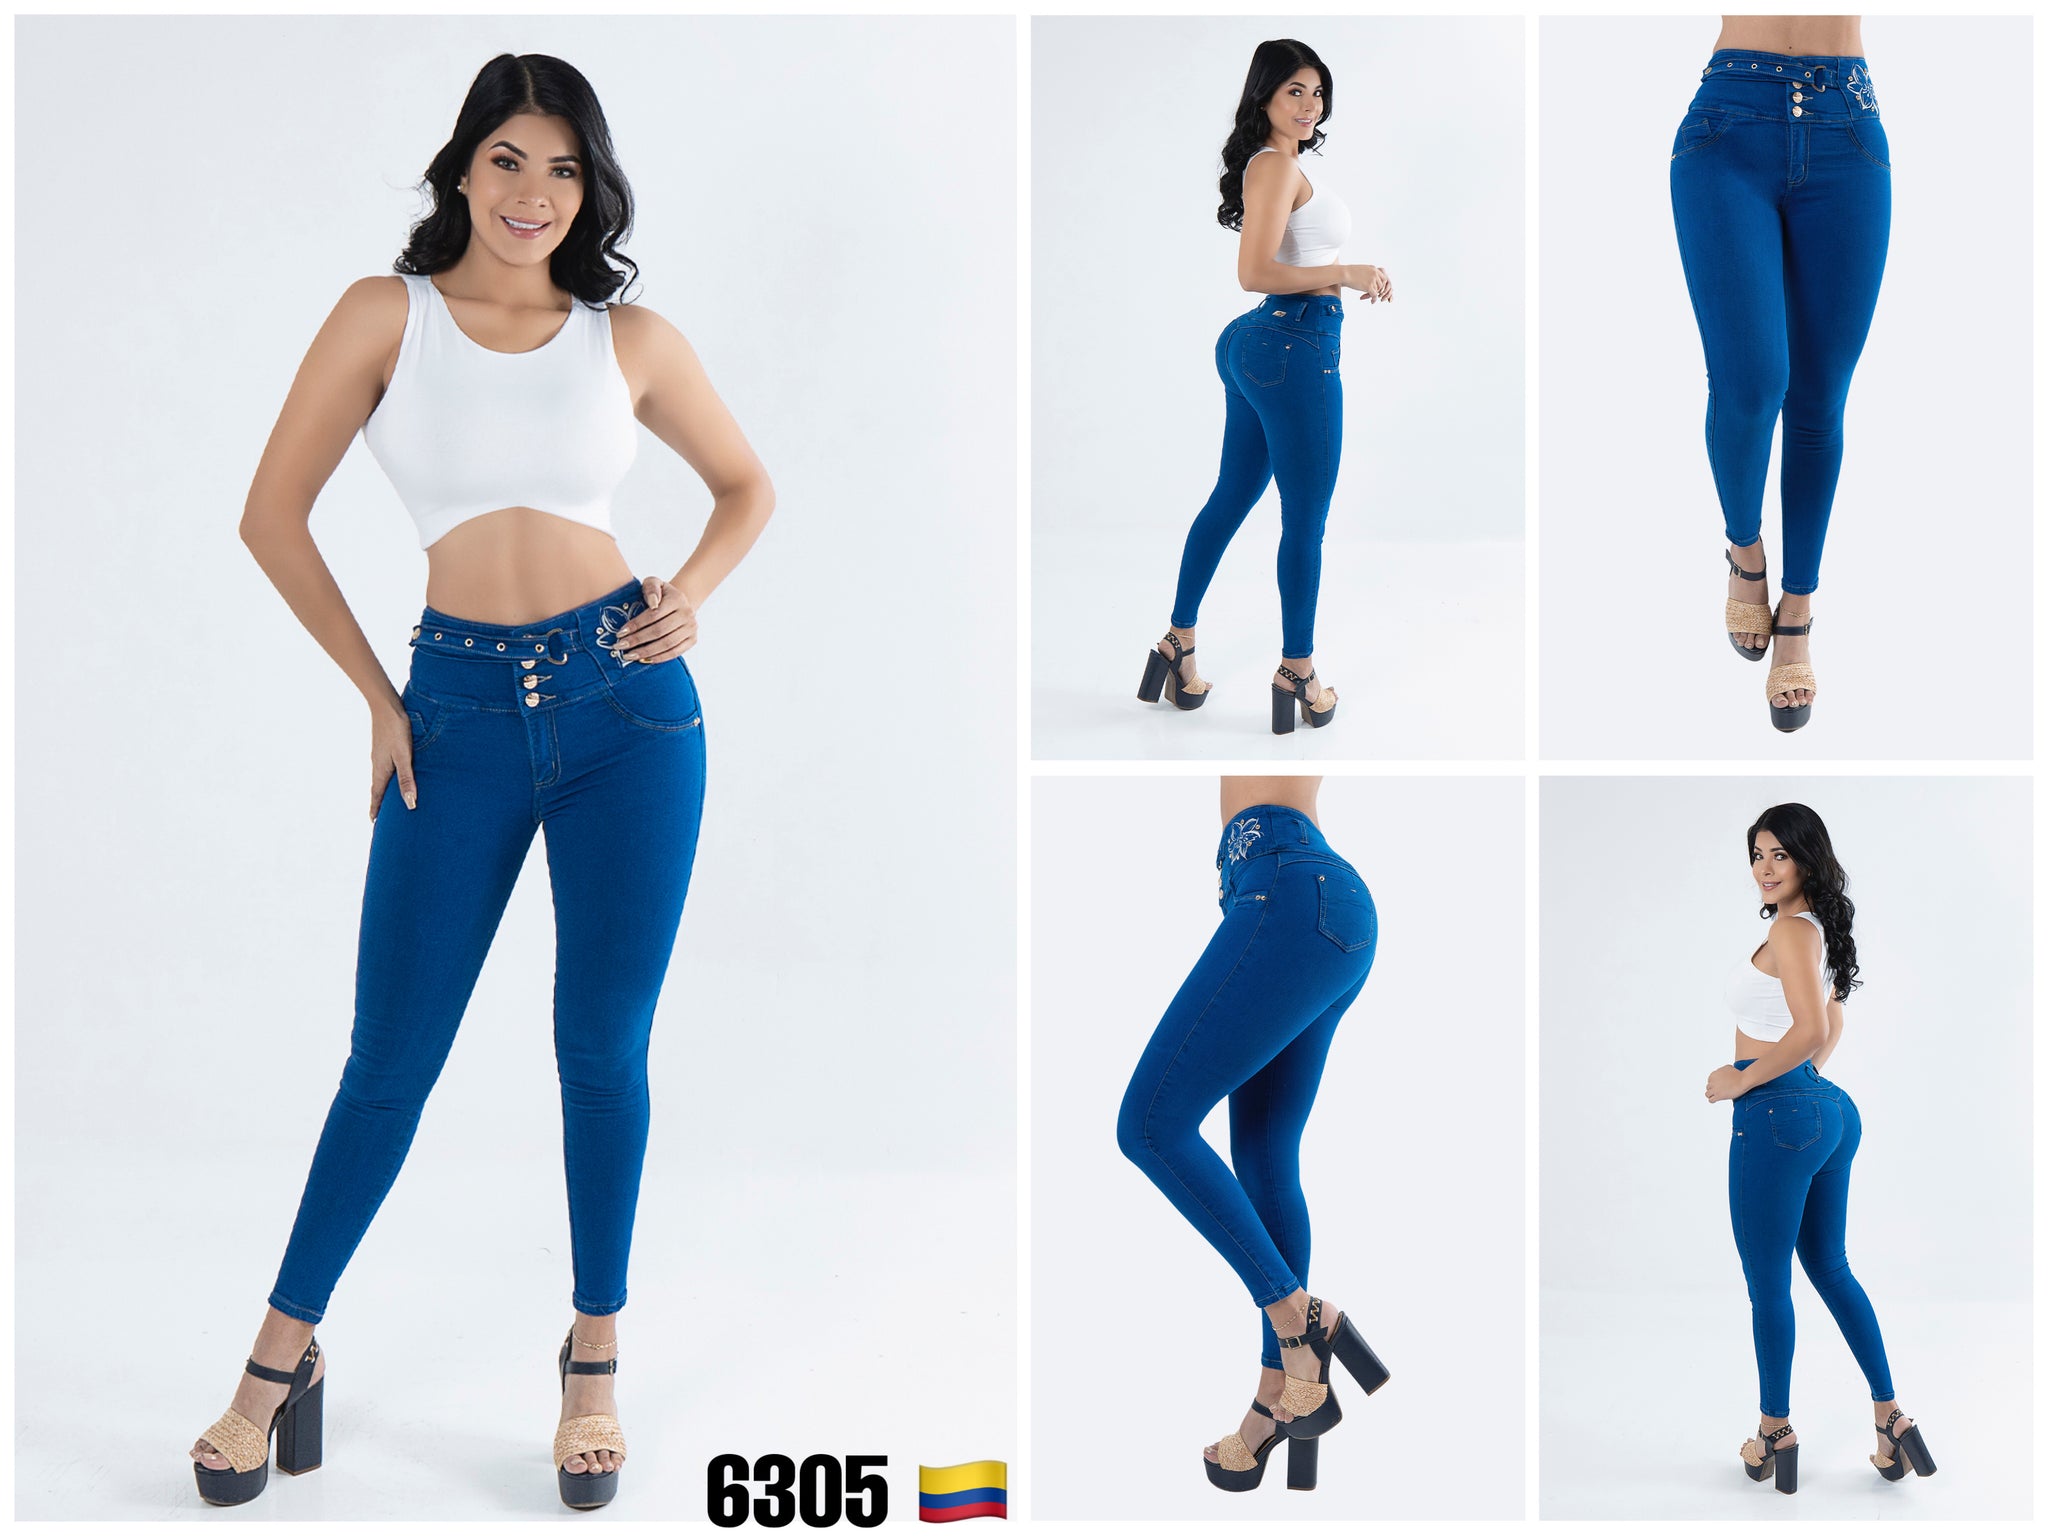 Jeans Colombiano Verox 6305 – Colombian Jeans & Fajas